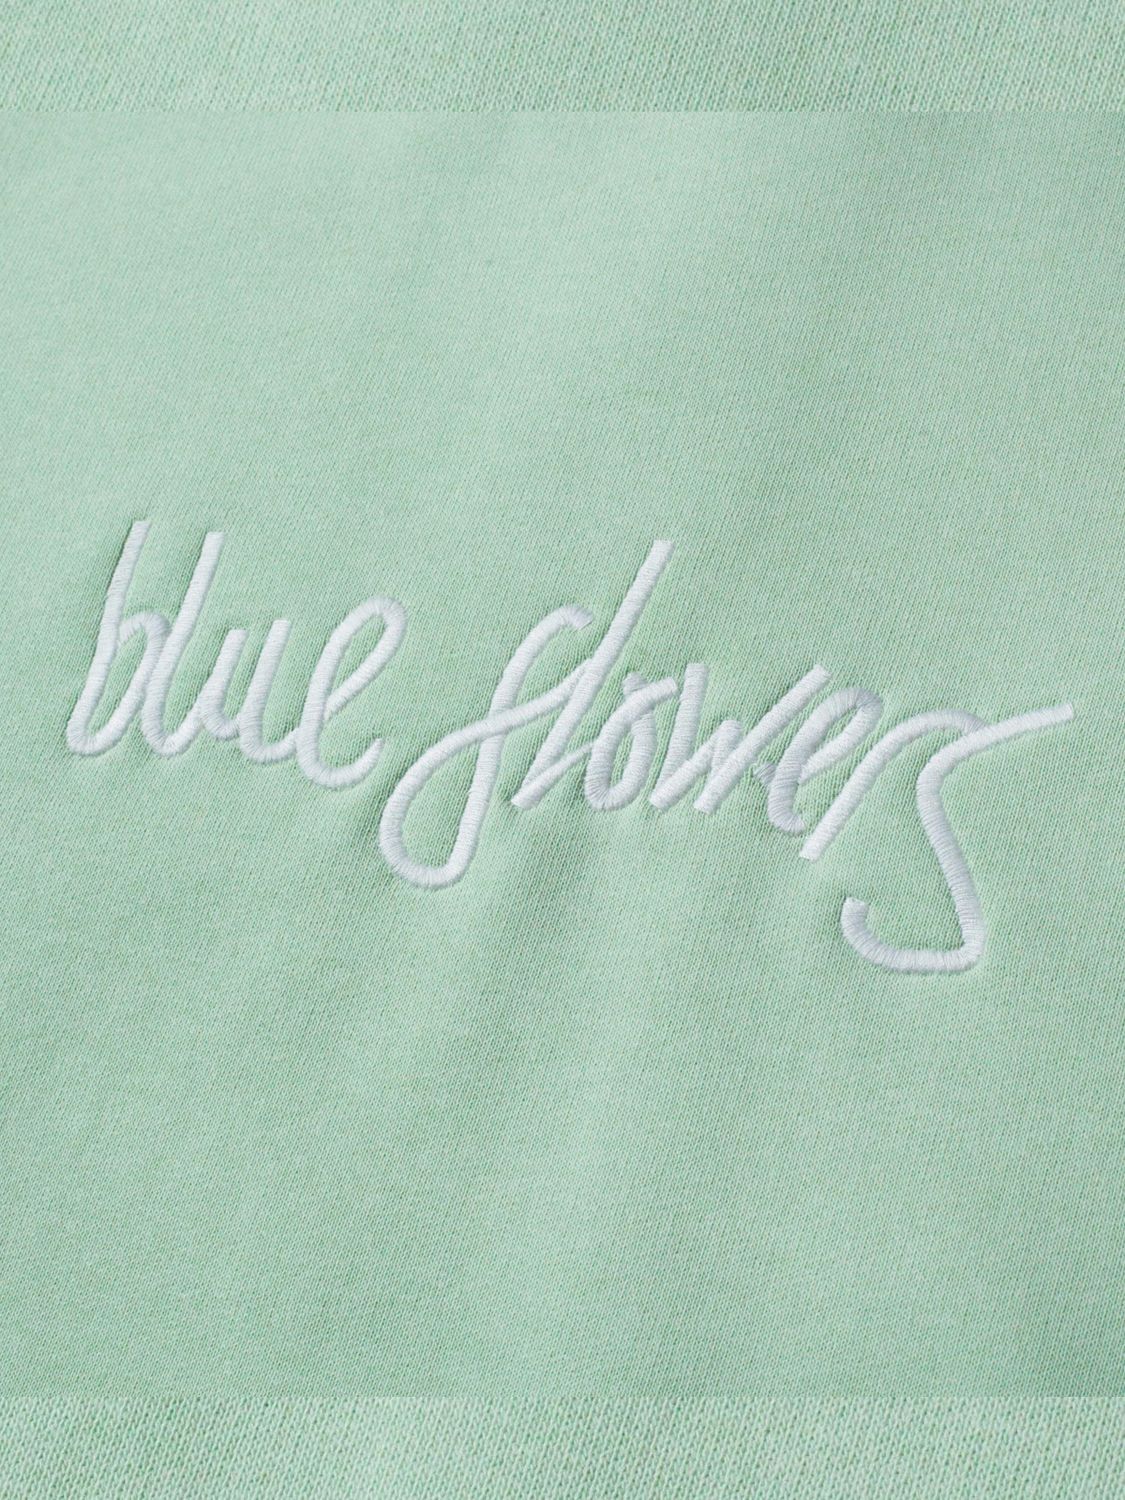 Blue Flowers Pencraft Sweatshirt, Mint Green, S